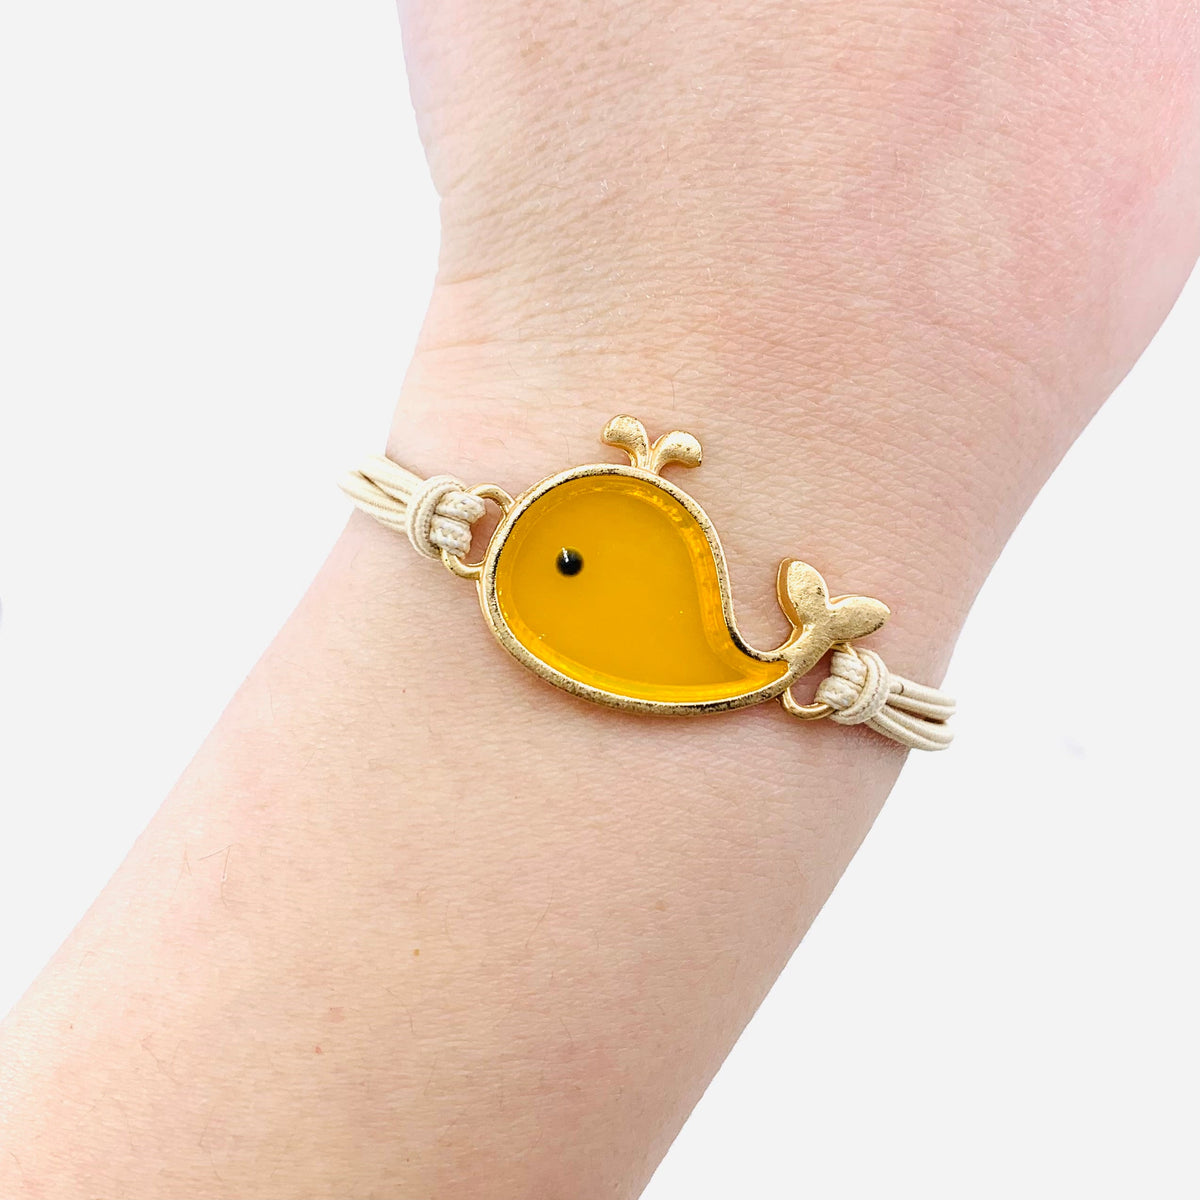 Baby Whale Bracelets Jewelry - Yellow 